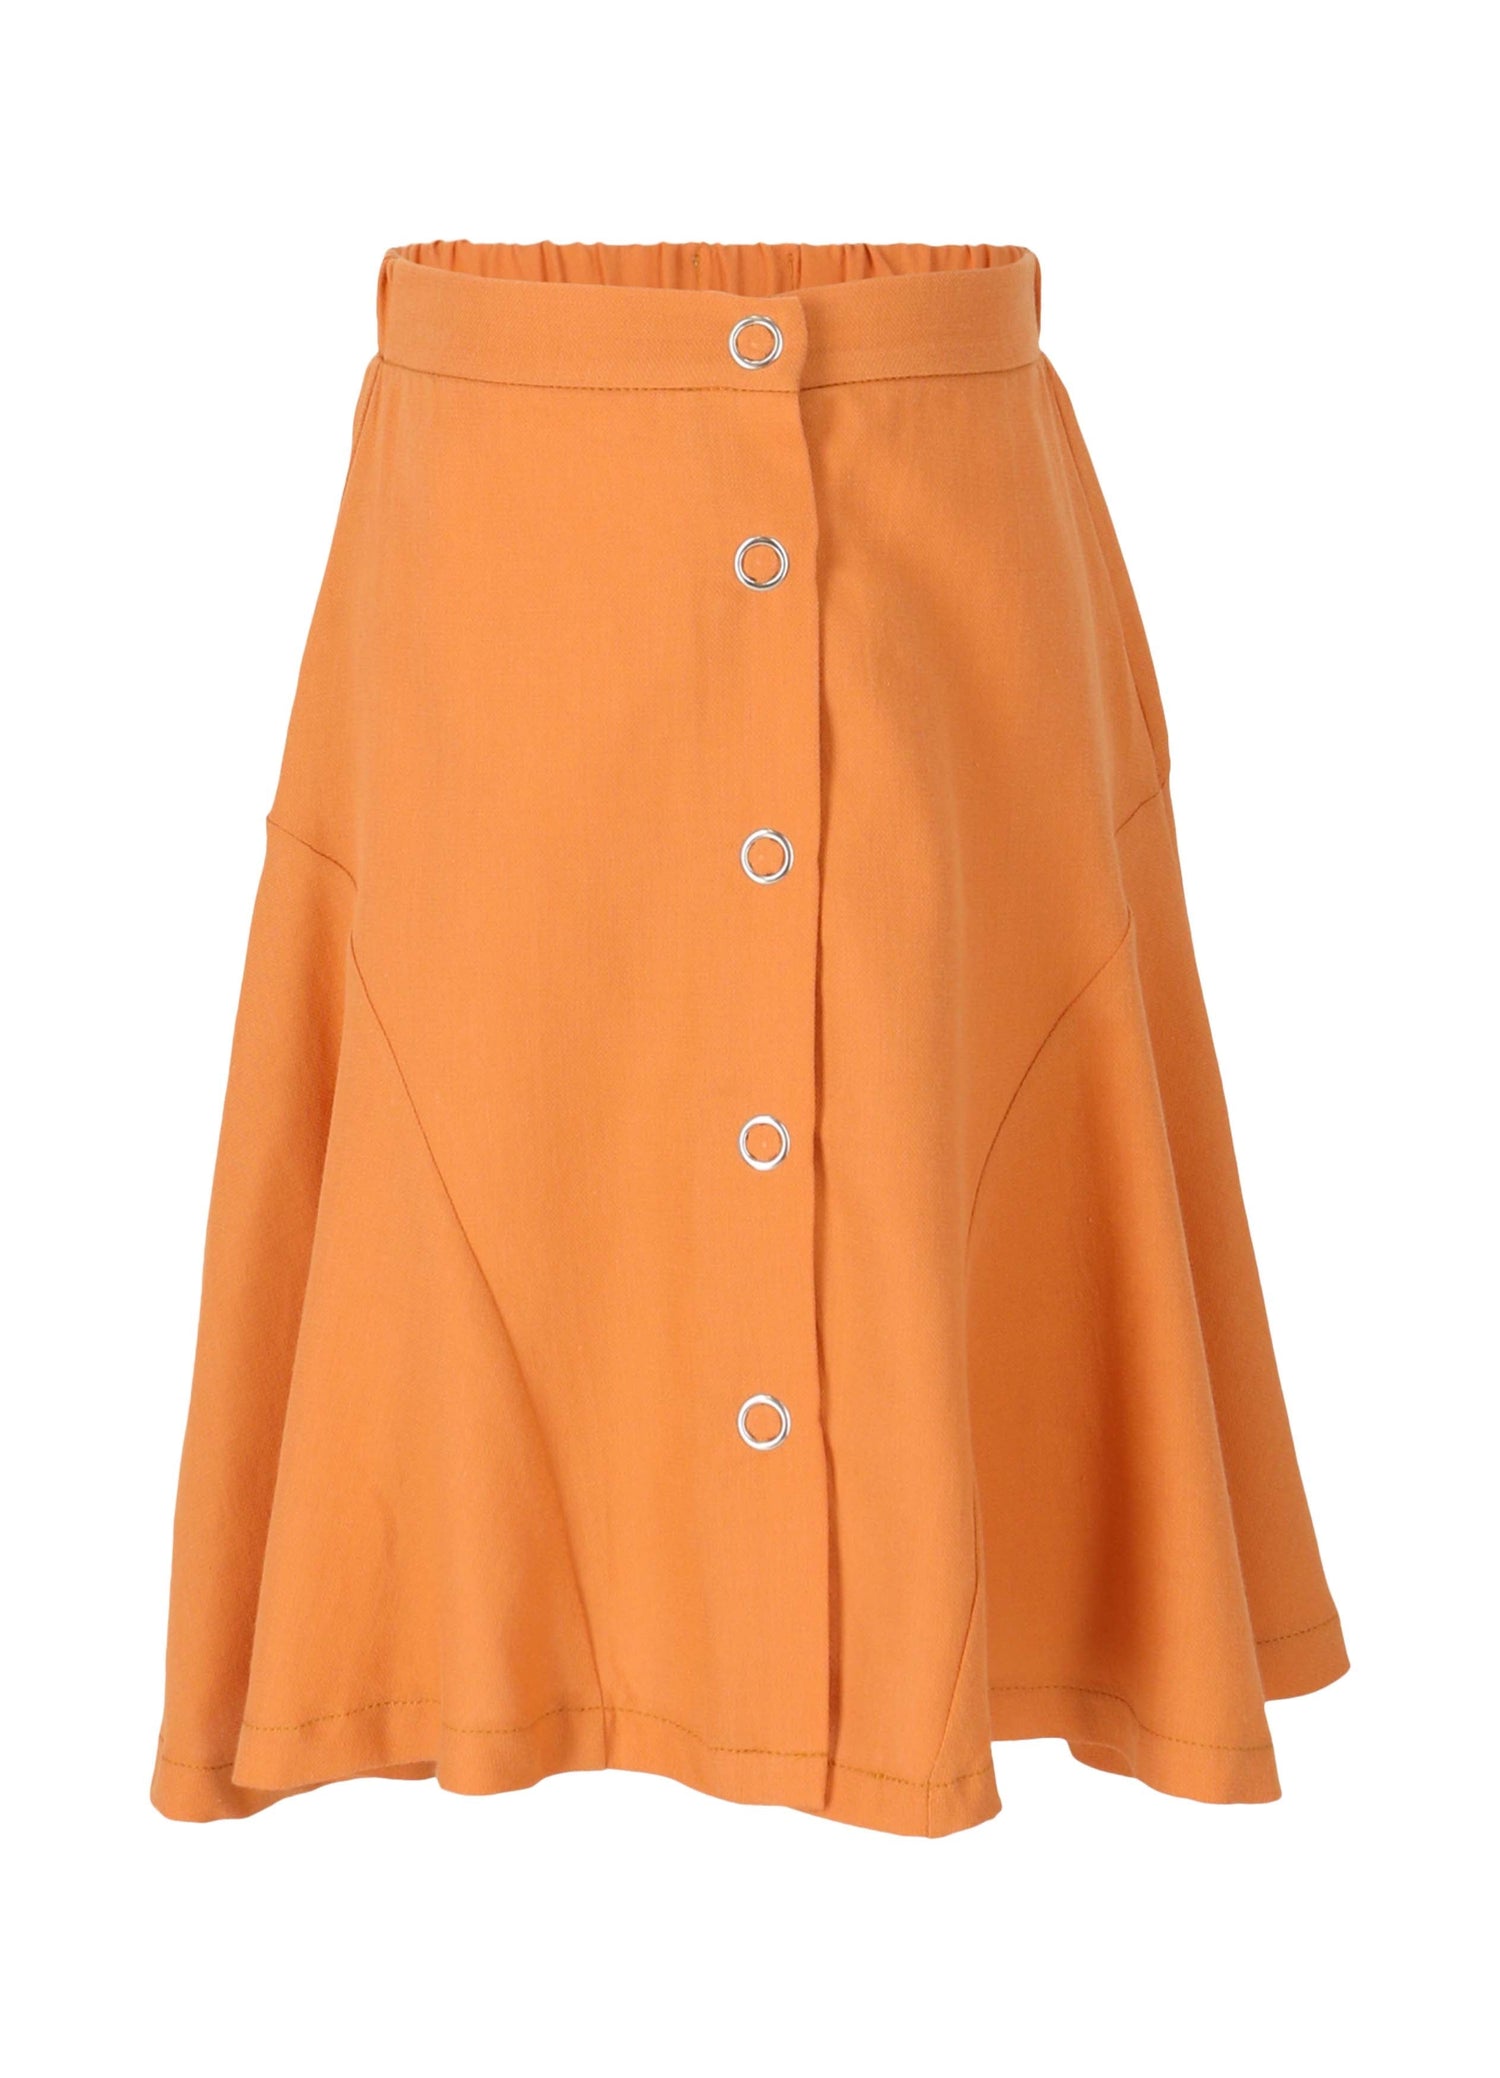 Skirt No. 9 - Mango Skirts LMN3 